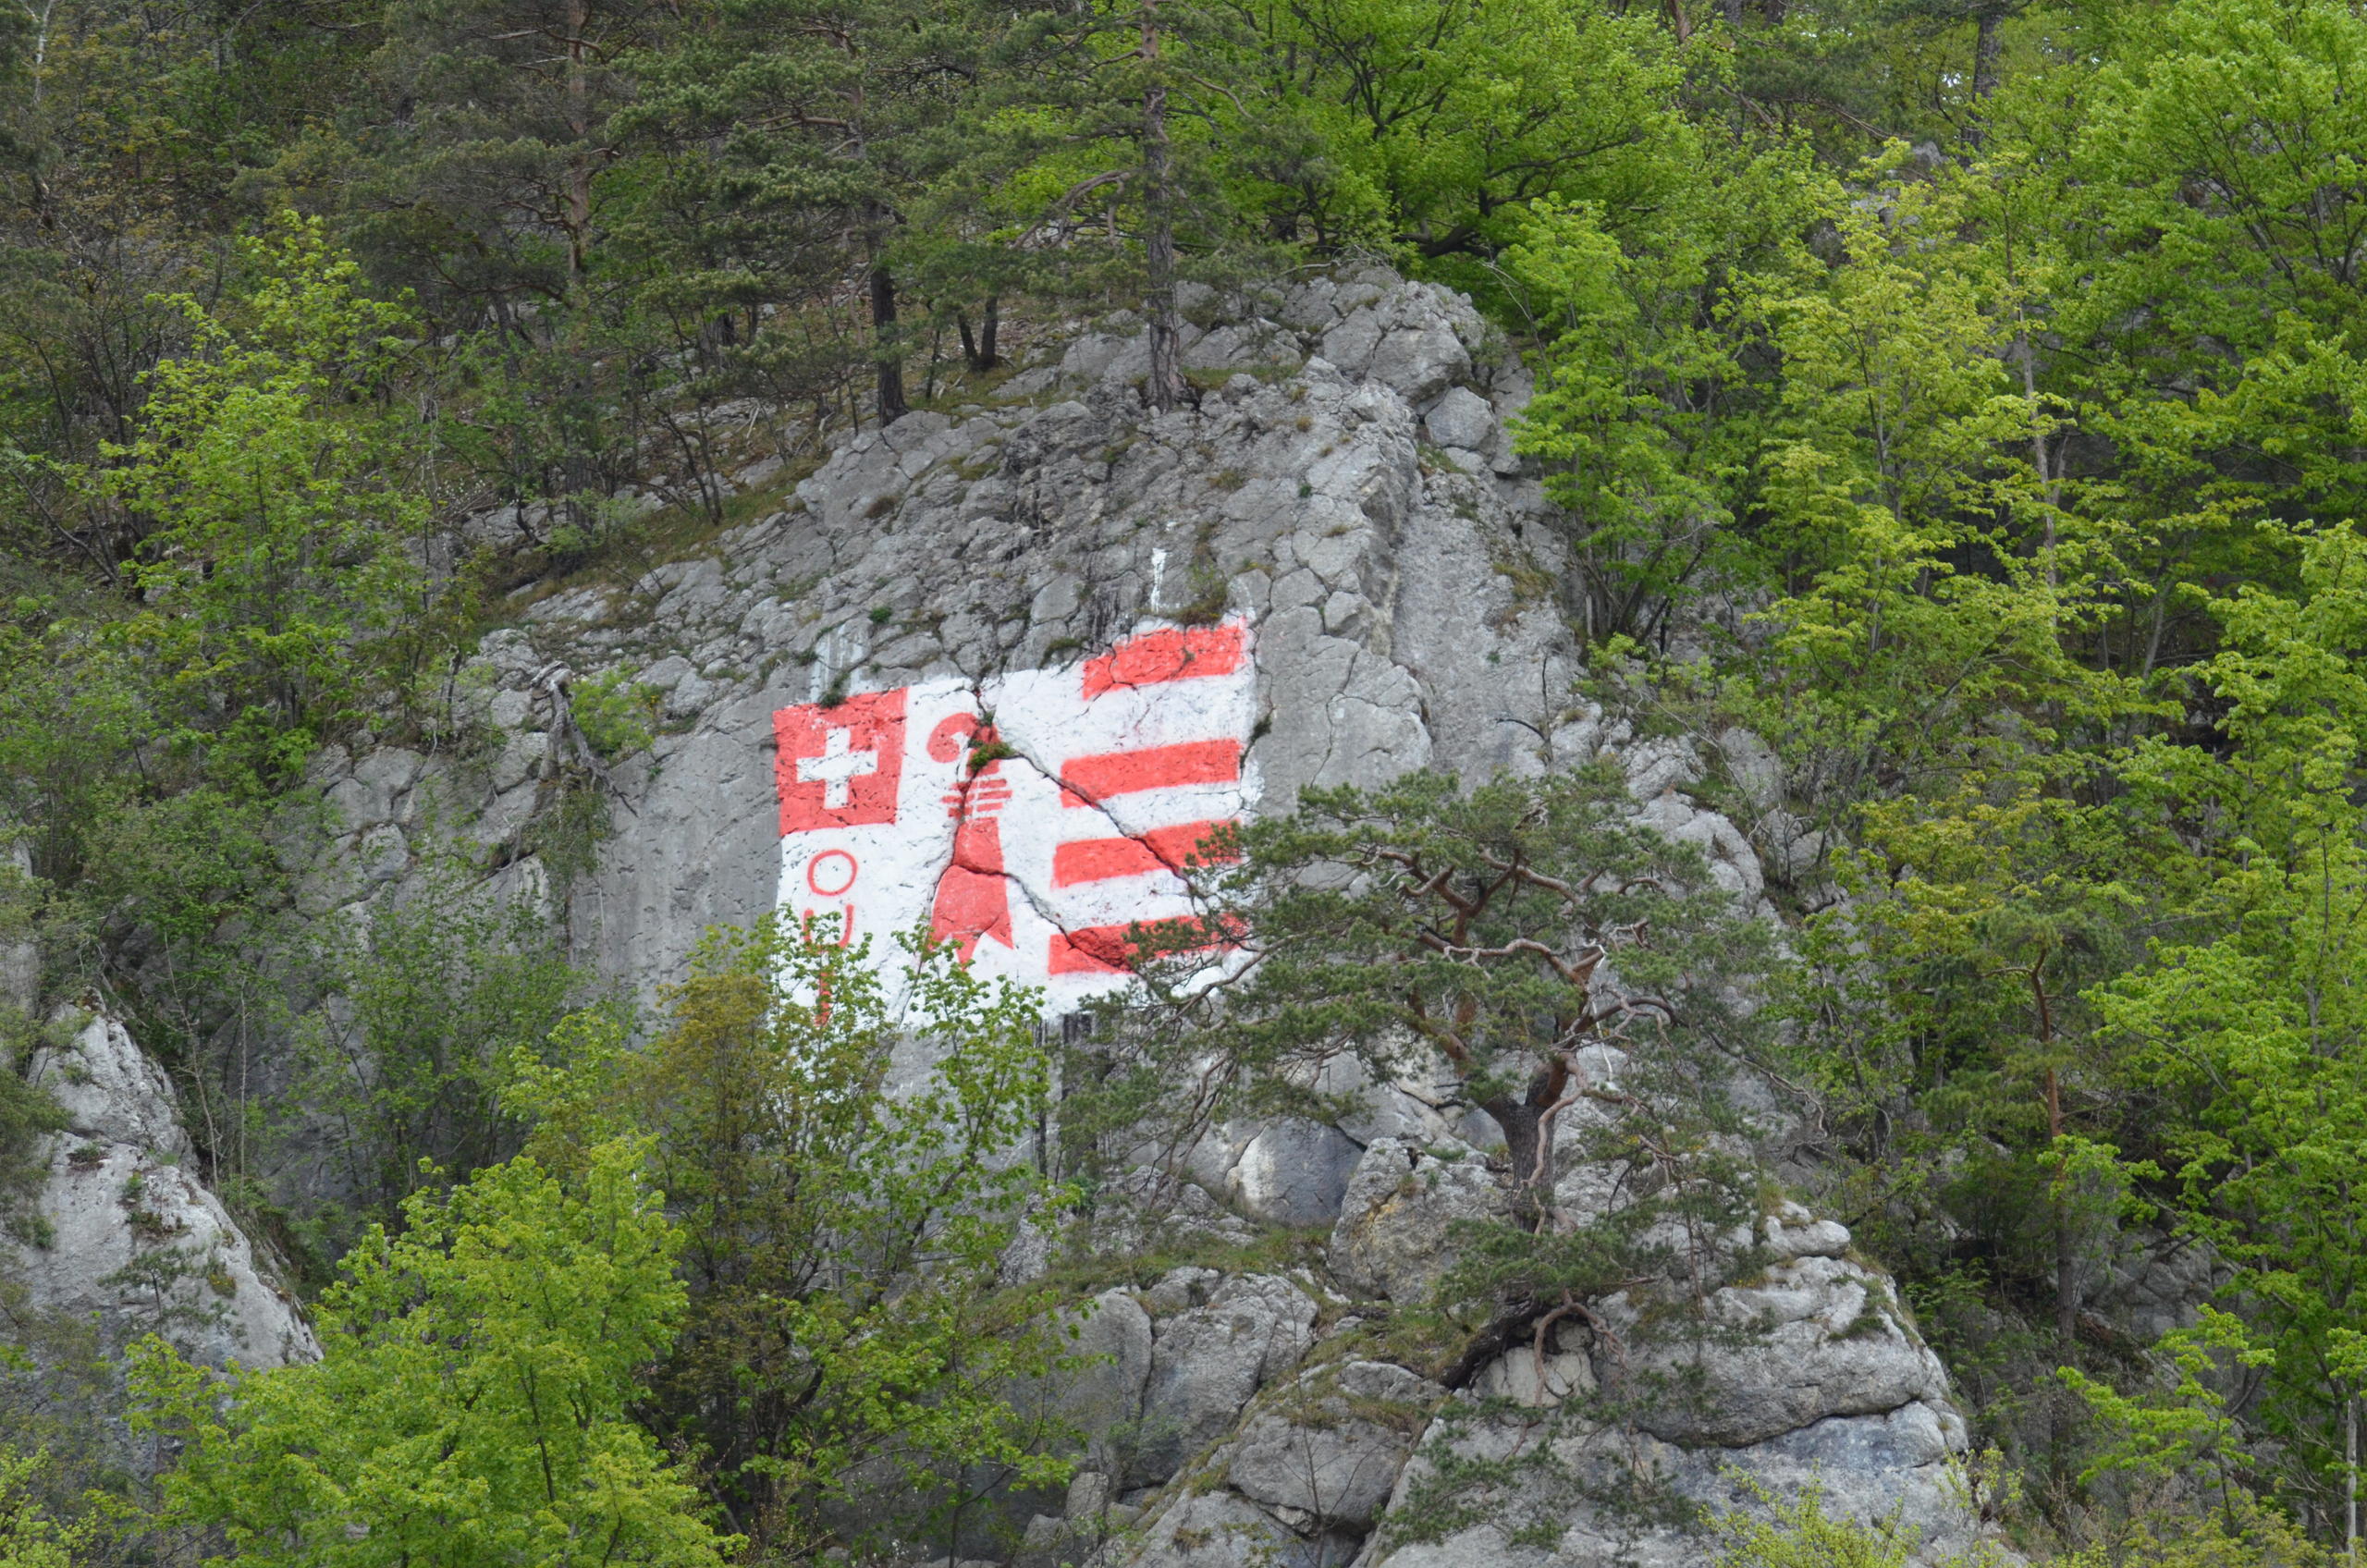 Sulla roccia è stato dipinto lo stemma giurassiano.